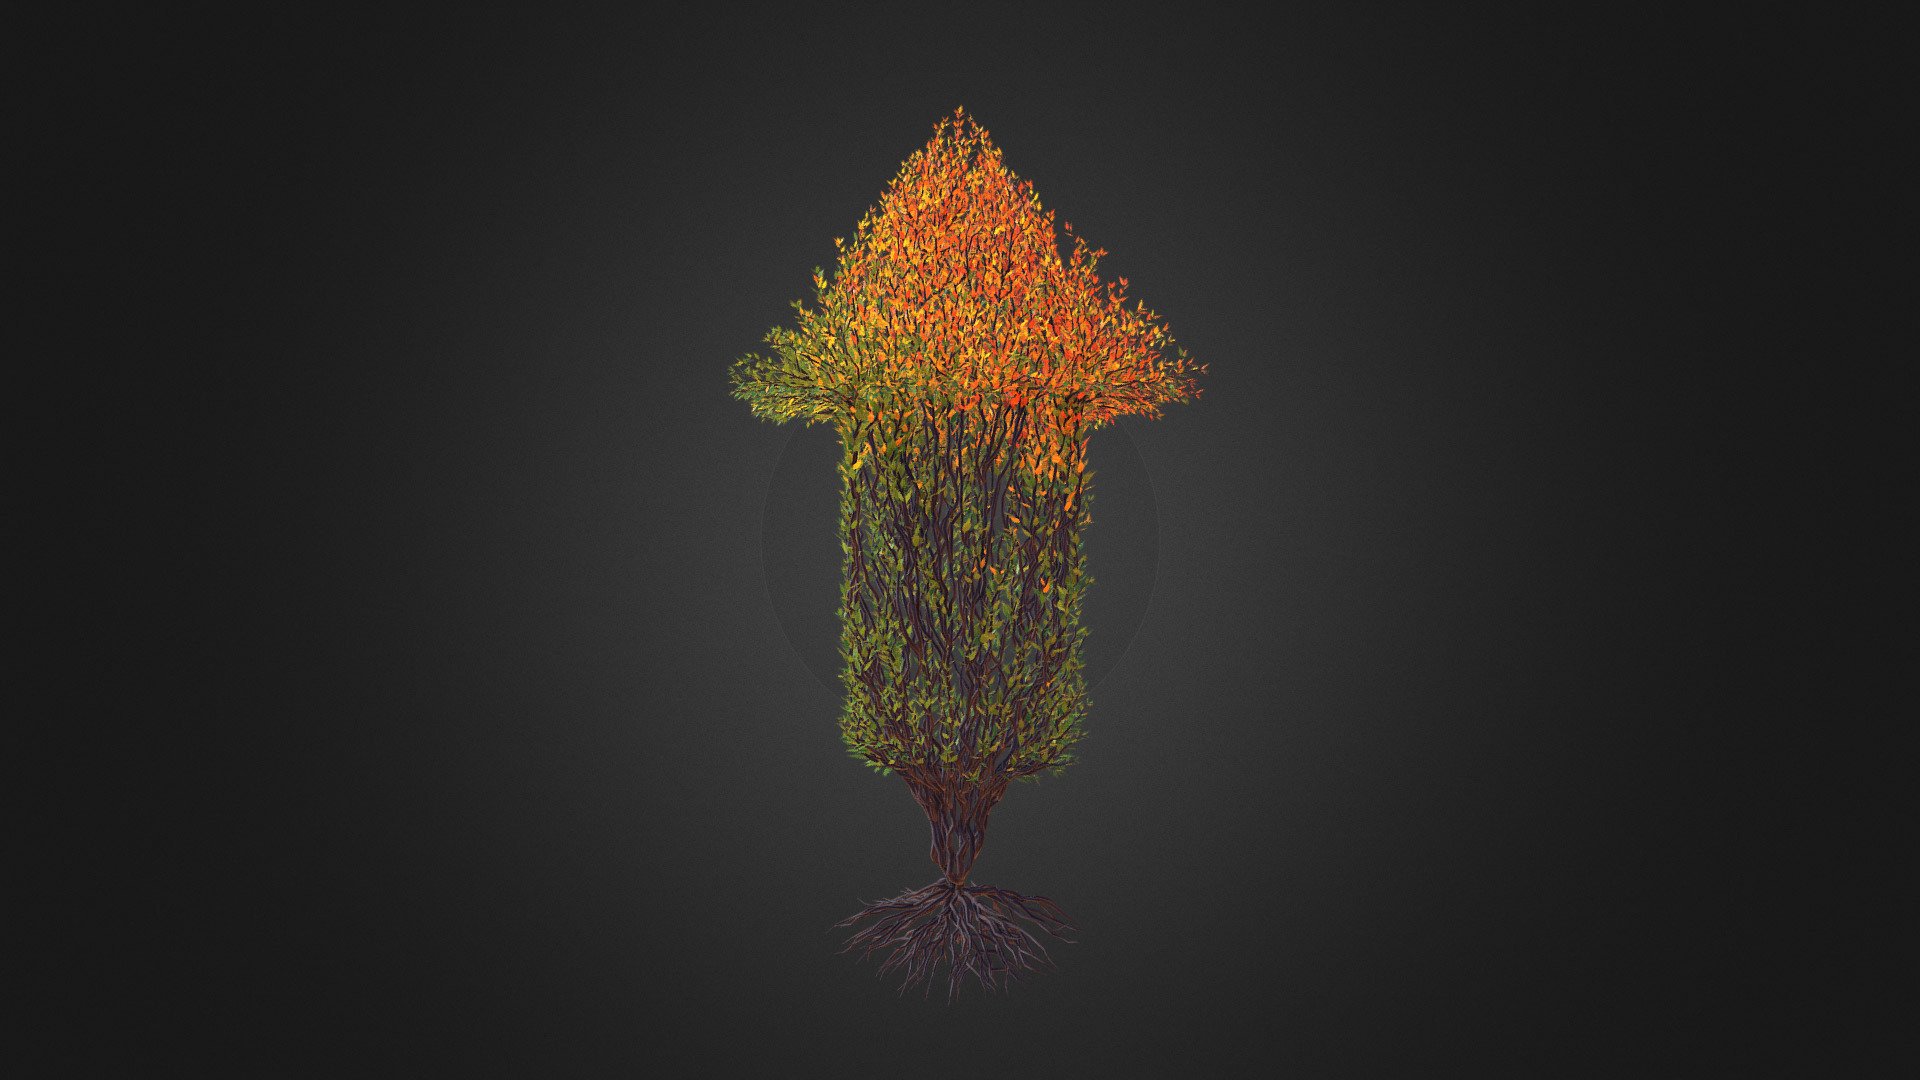 Tree in a shape of an arrow